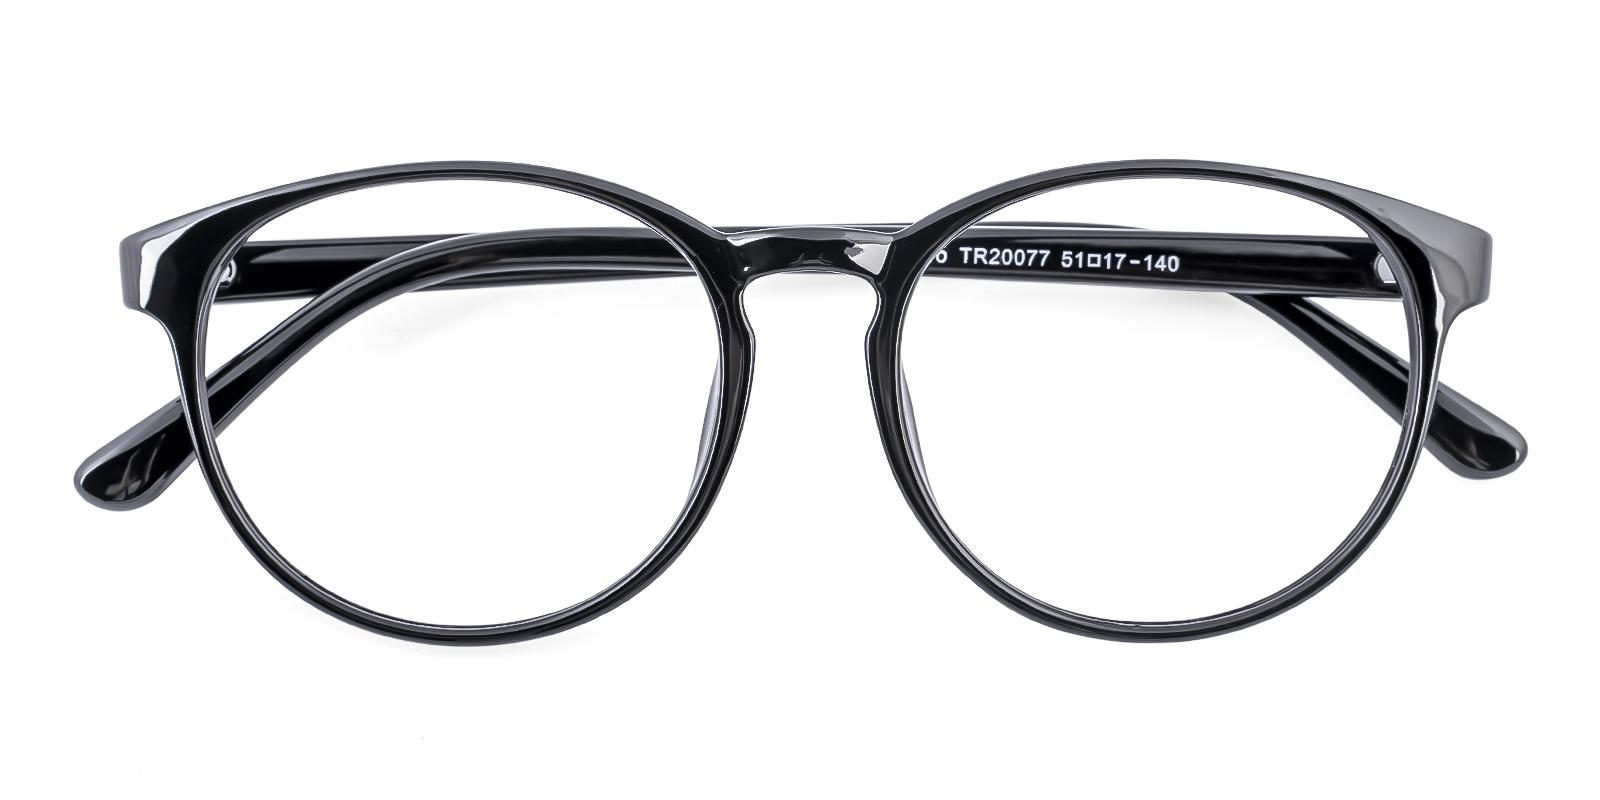 Crucile Black Plastic Eyeglasses , UniversalBridgeFit Frames from ABBE Glasses